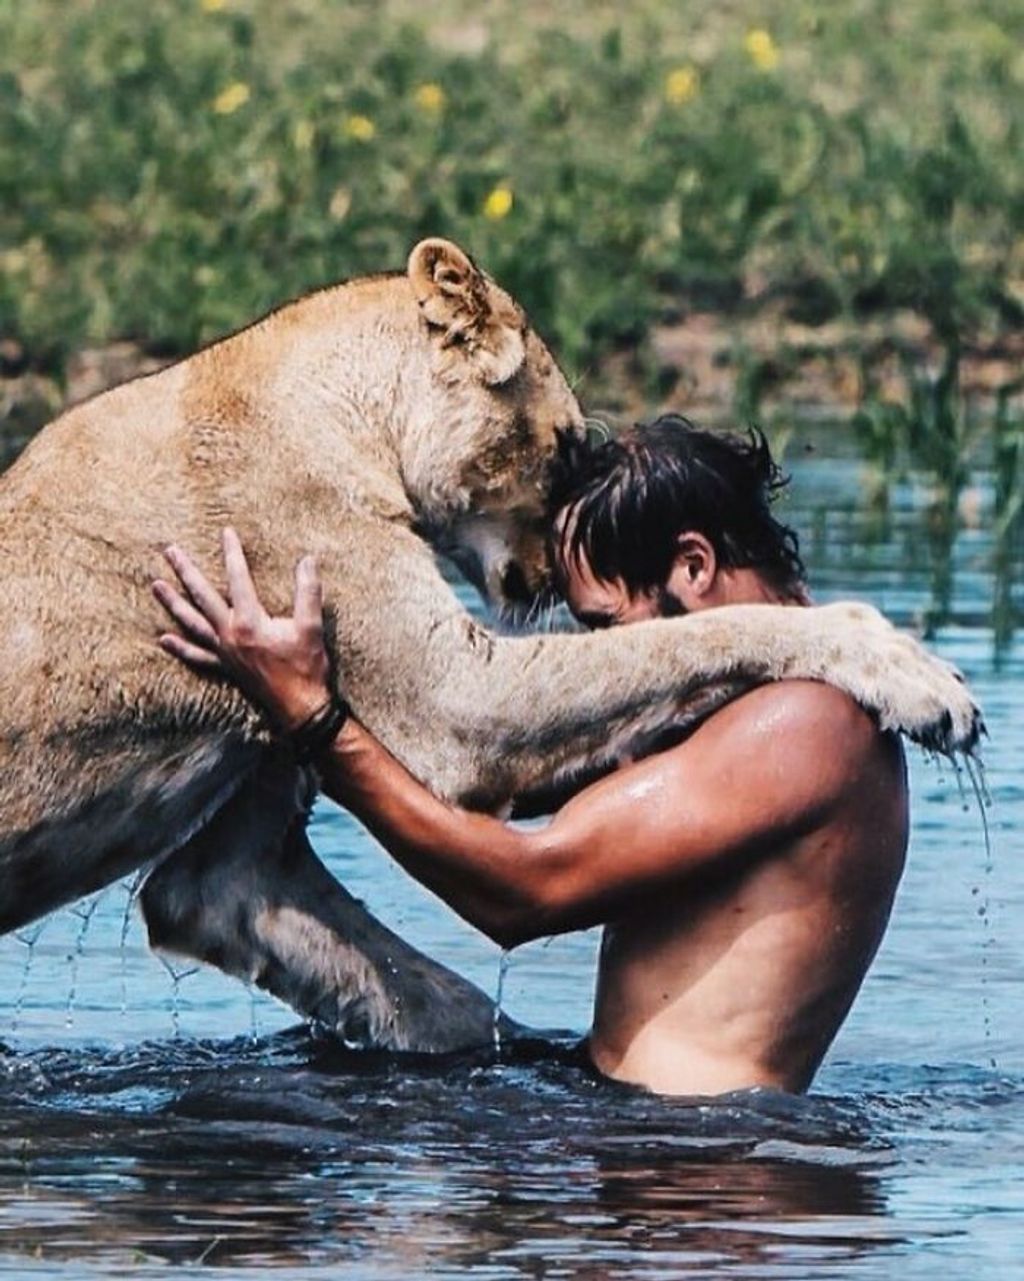 oroszlán, vad, vadon, afrika, vadmentés, állatvédelem, állatvédő, gondozó, barátság, barát, kötelék 